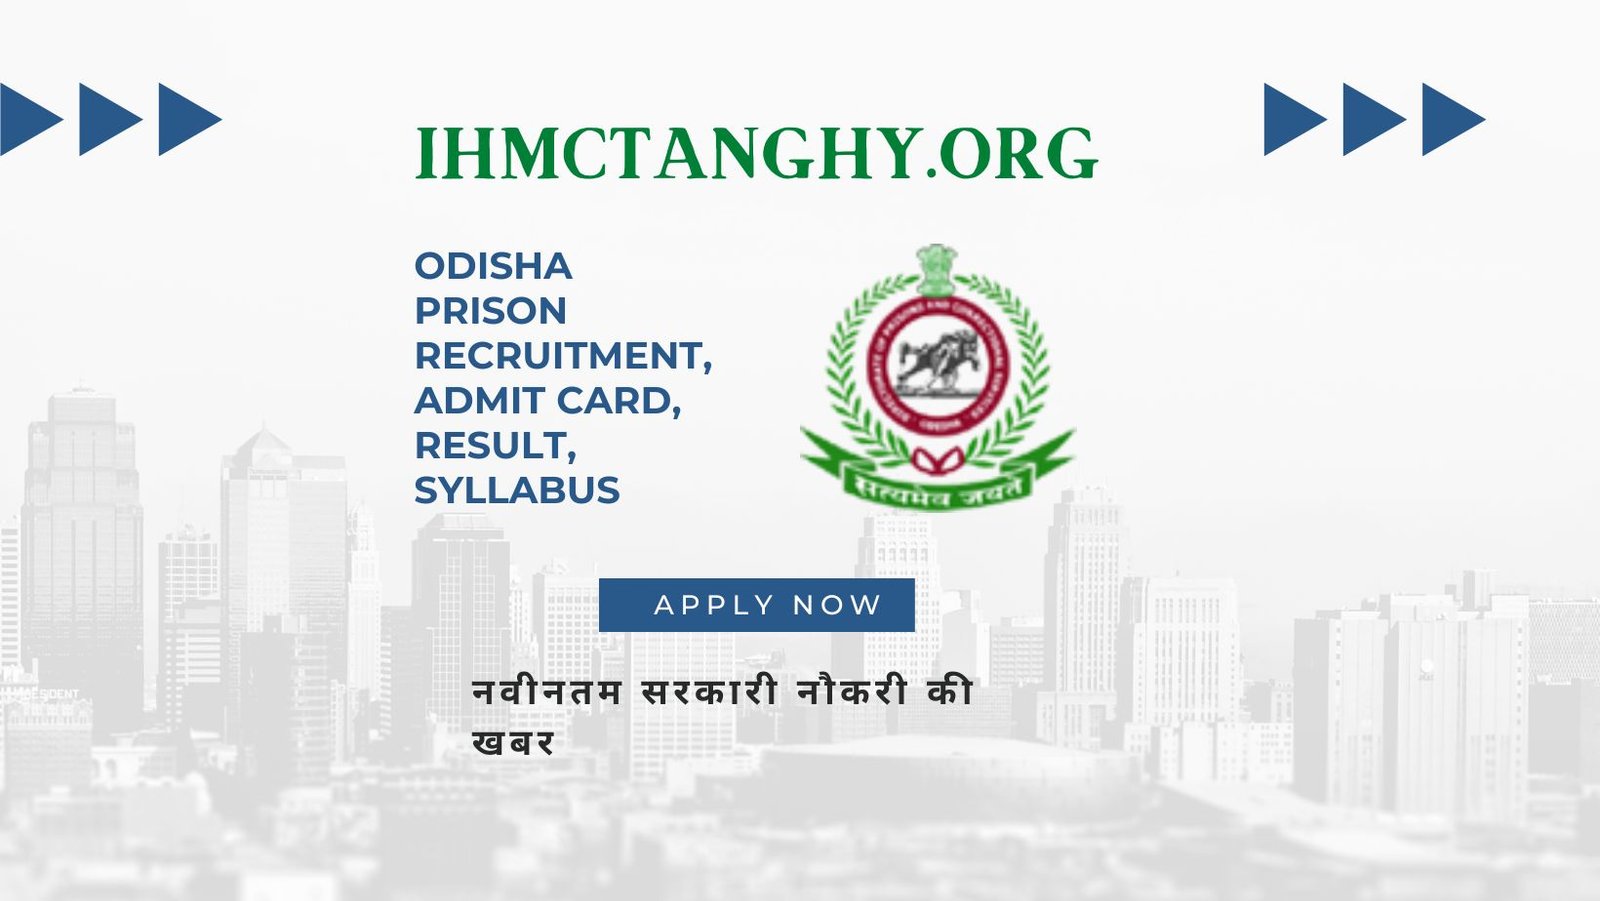 Odisha Prison Recruitment